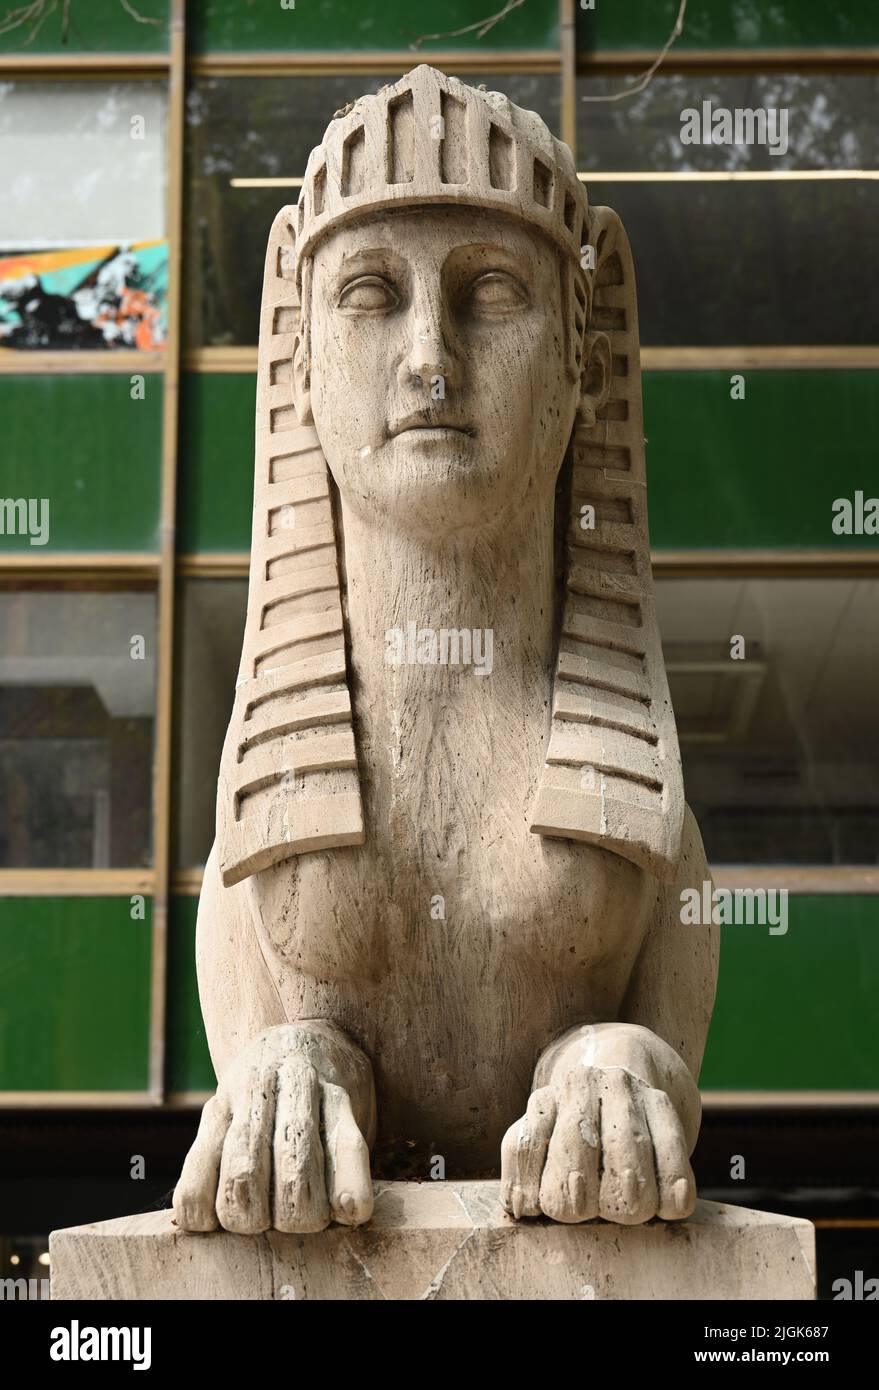 Sphinx statue in the old town of Palma de Mallorca Stock Photo